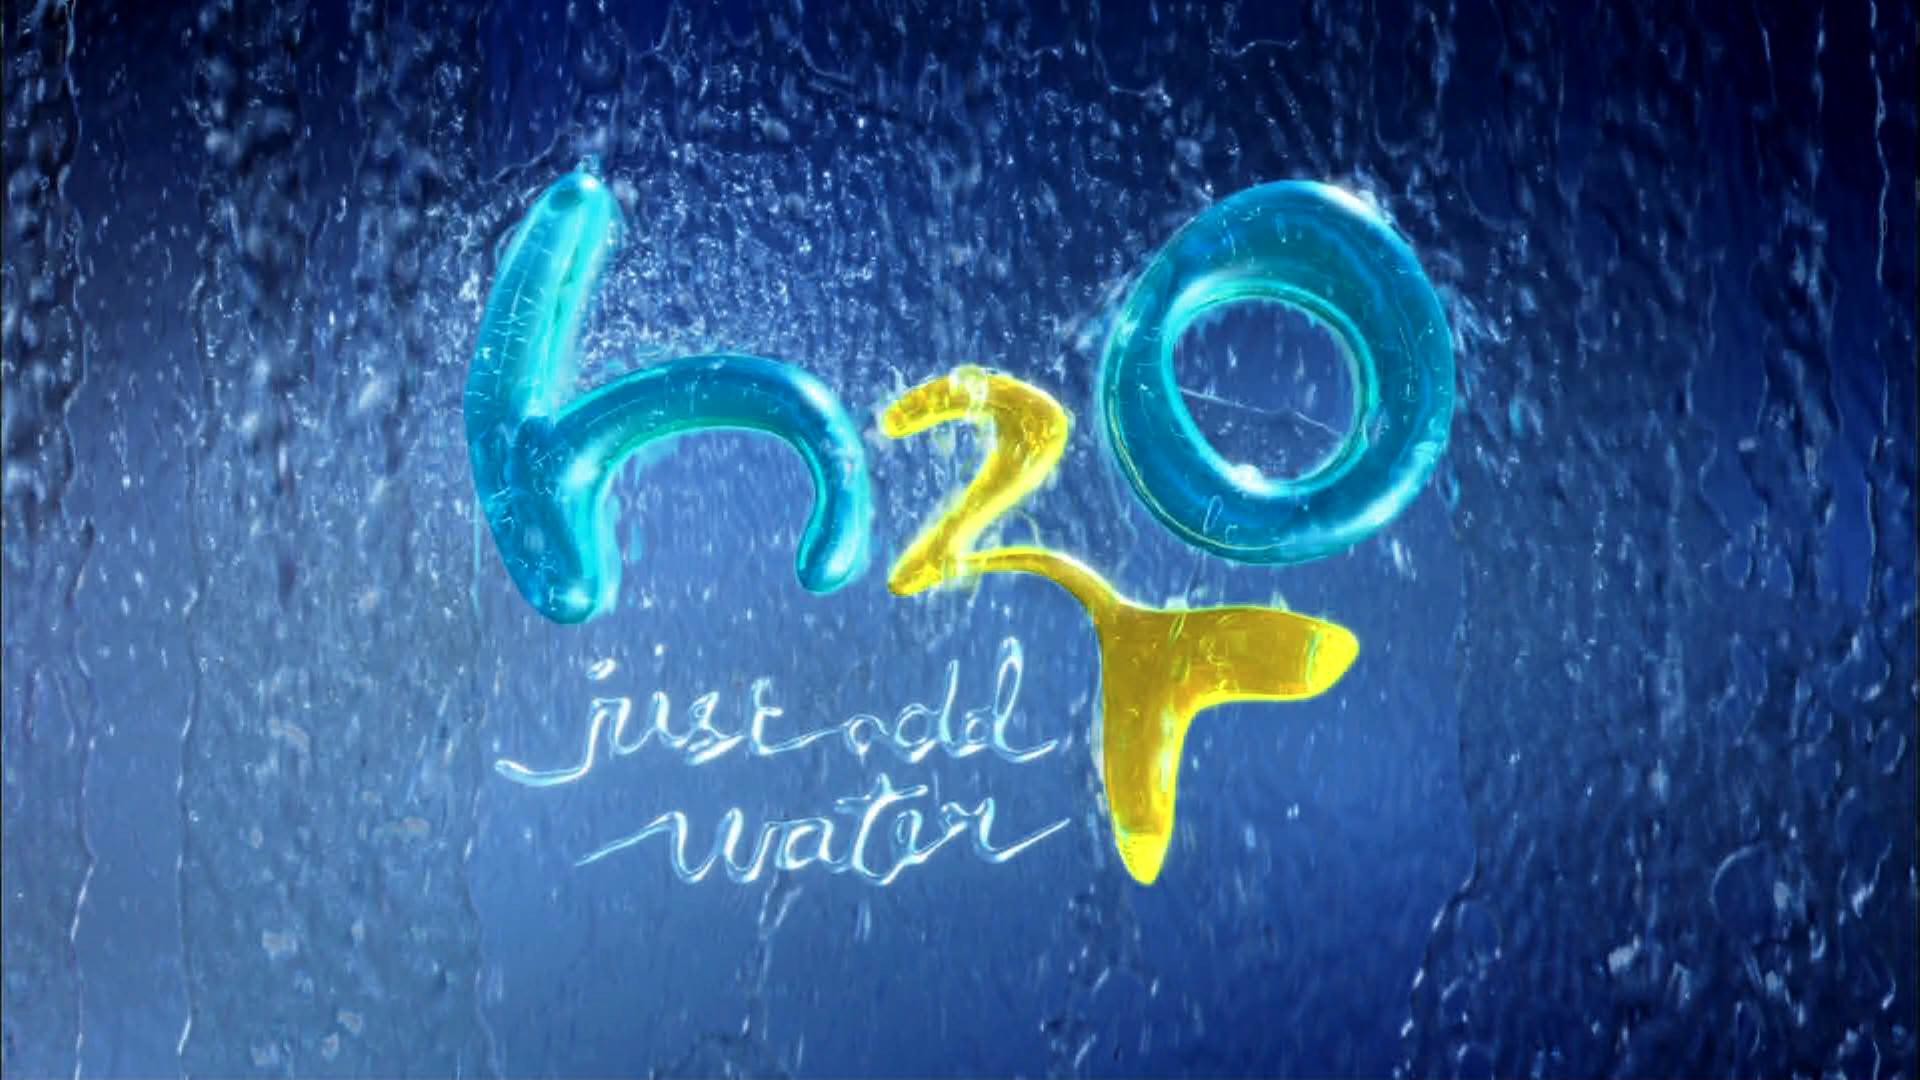 Н 2. H2o просто Добавь воды надпись. Н2о просто Добавь воды. Н2о просто Добавь воды логотип. H2o просто Добавь воды заставка.